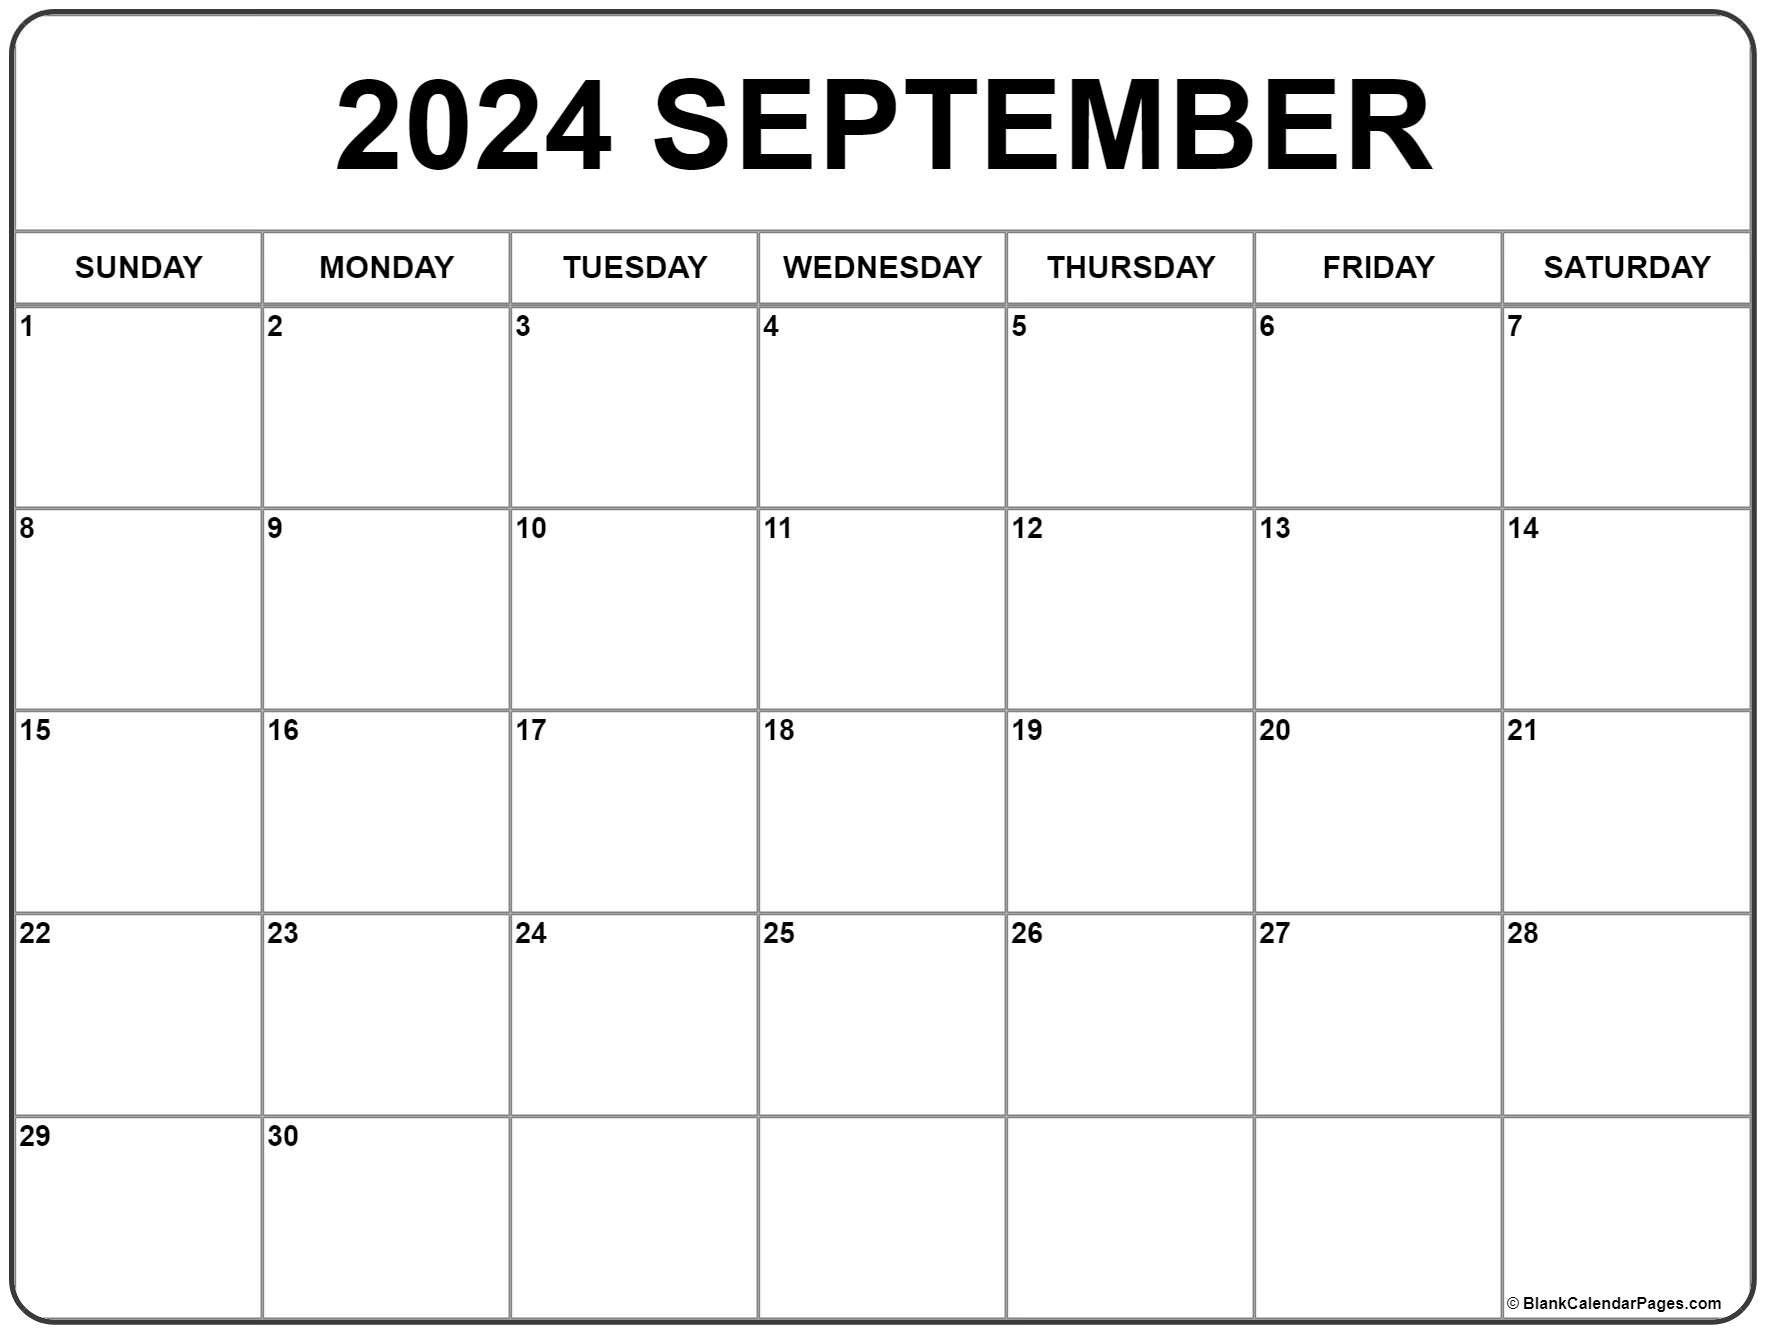 September Printable Calendar 2022 September 2022 Calendar | Free Printable Calendar Templates